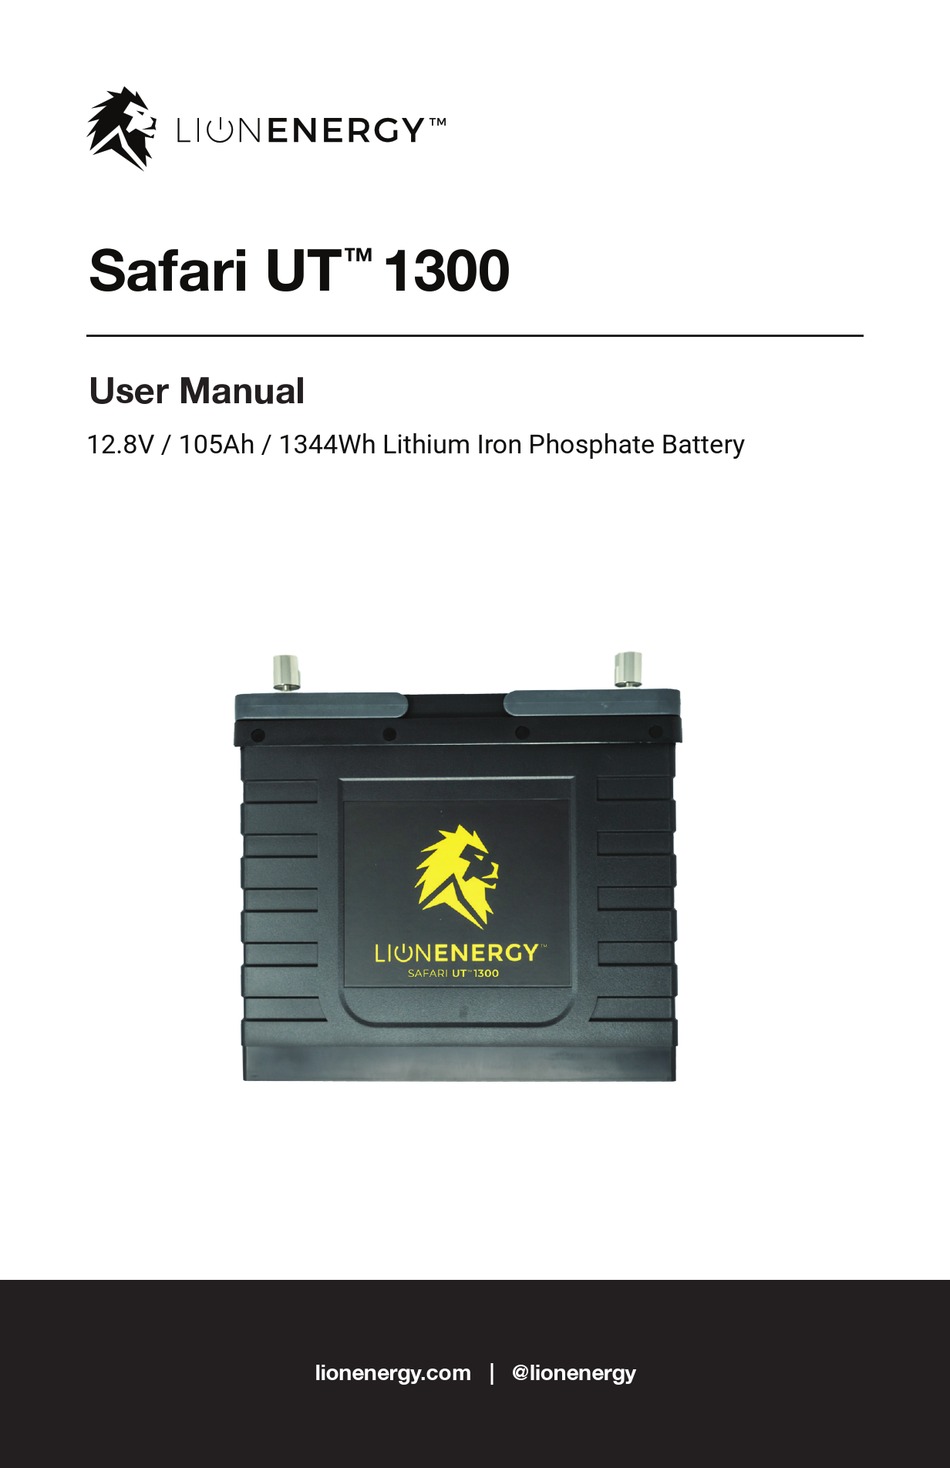 lion energy safari ut 1300 manual